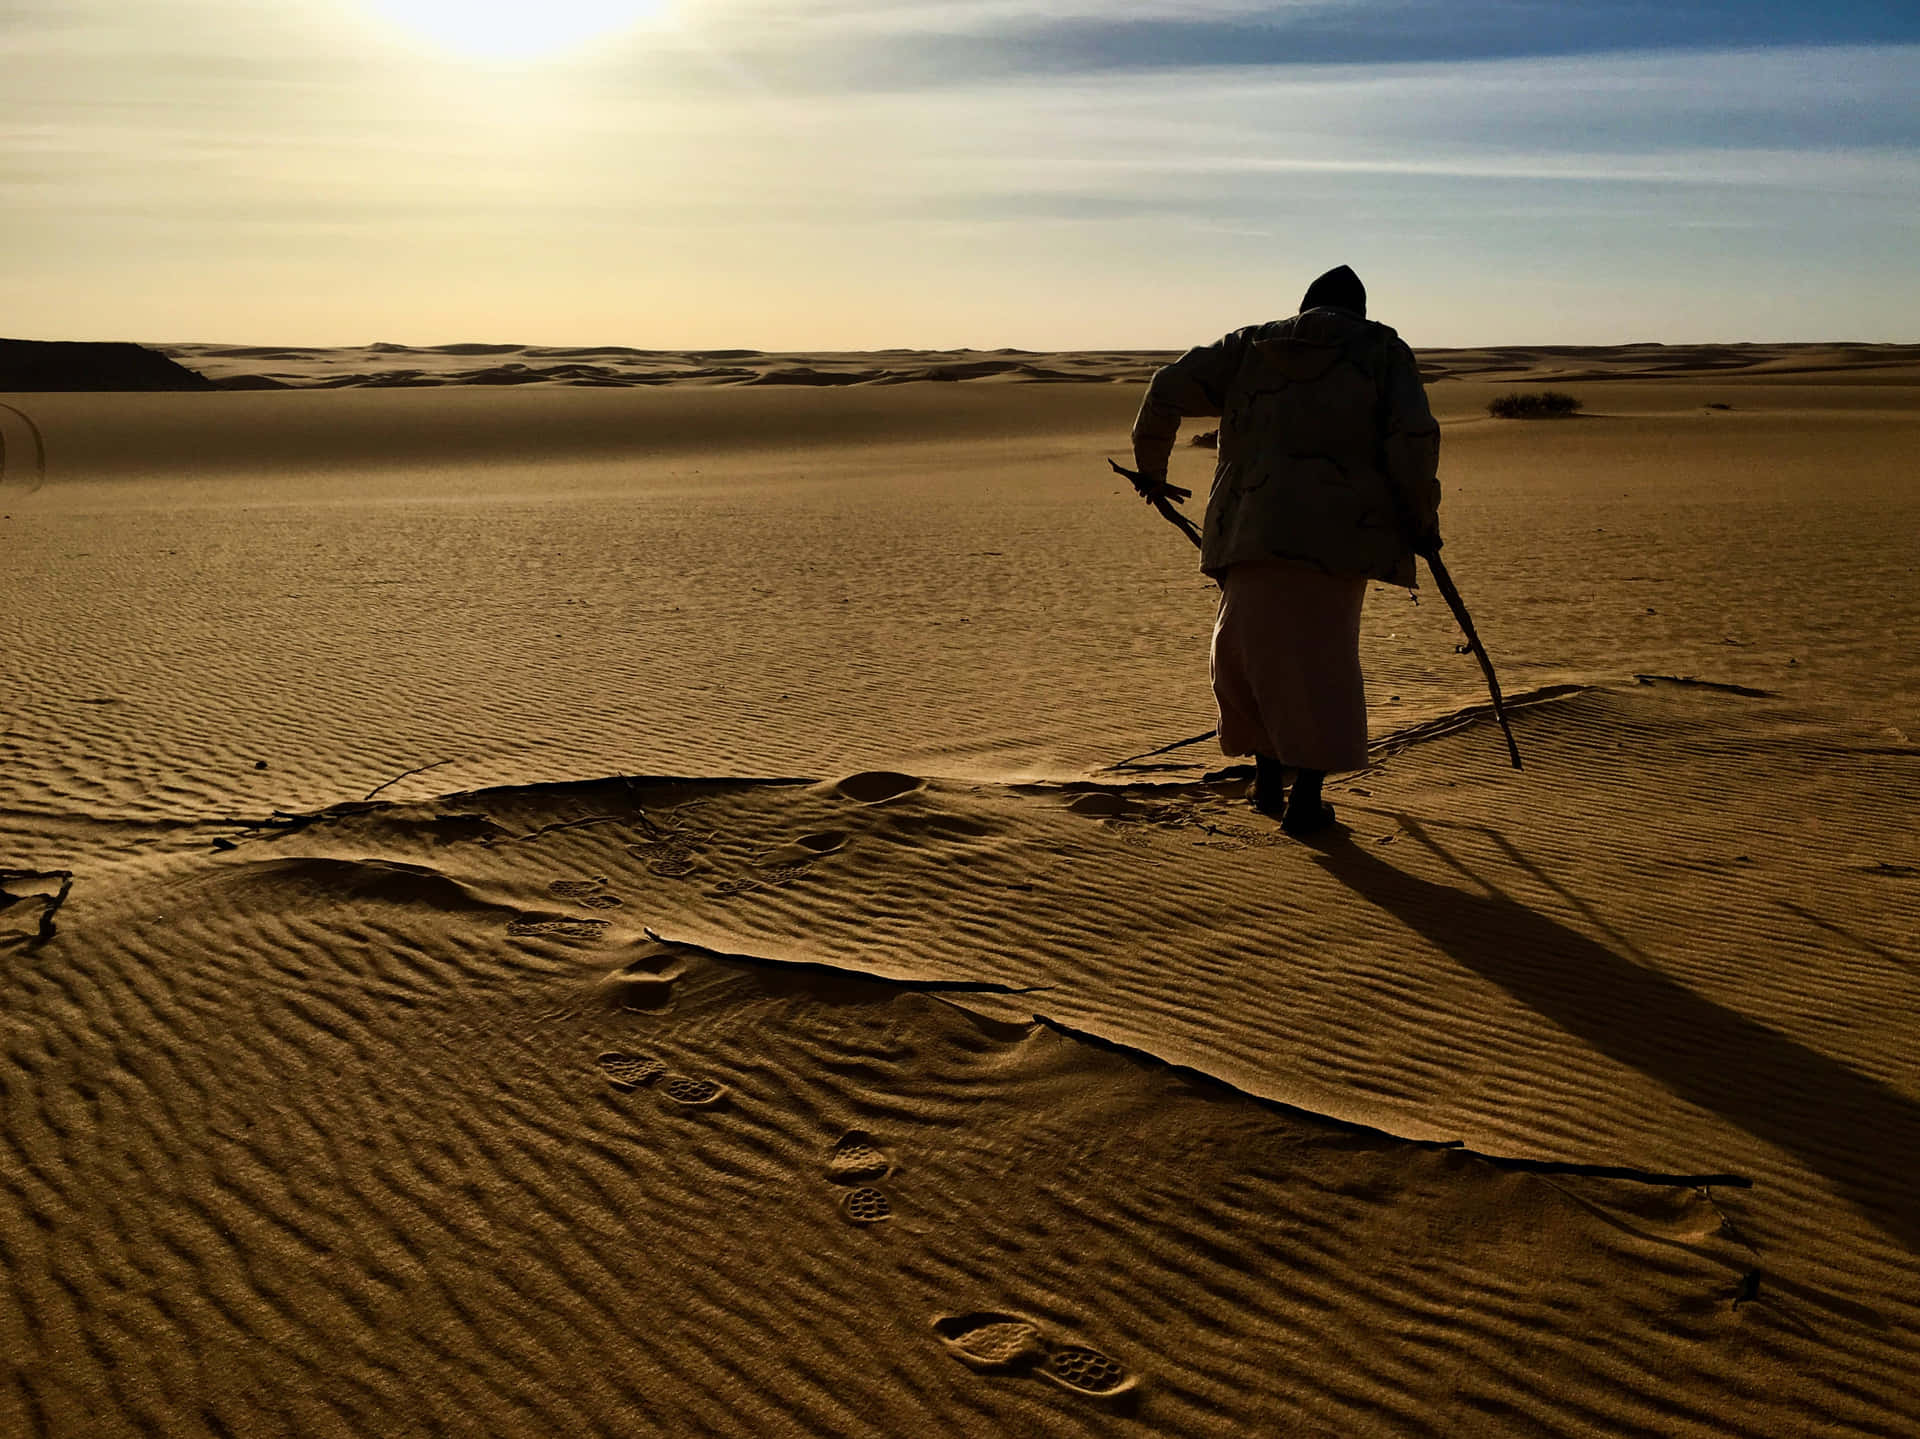 Arab Man Silhouette In Desert Wallpaper